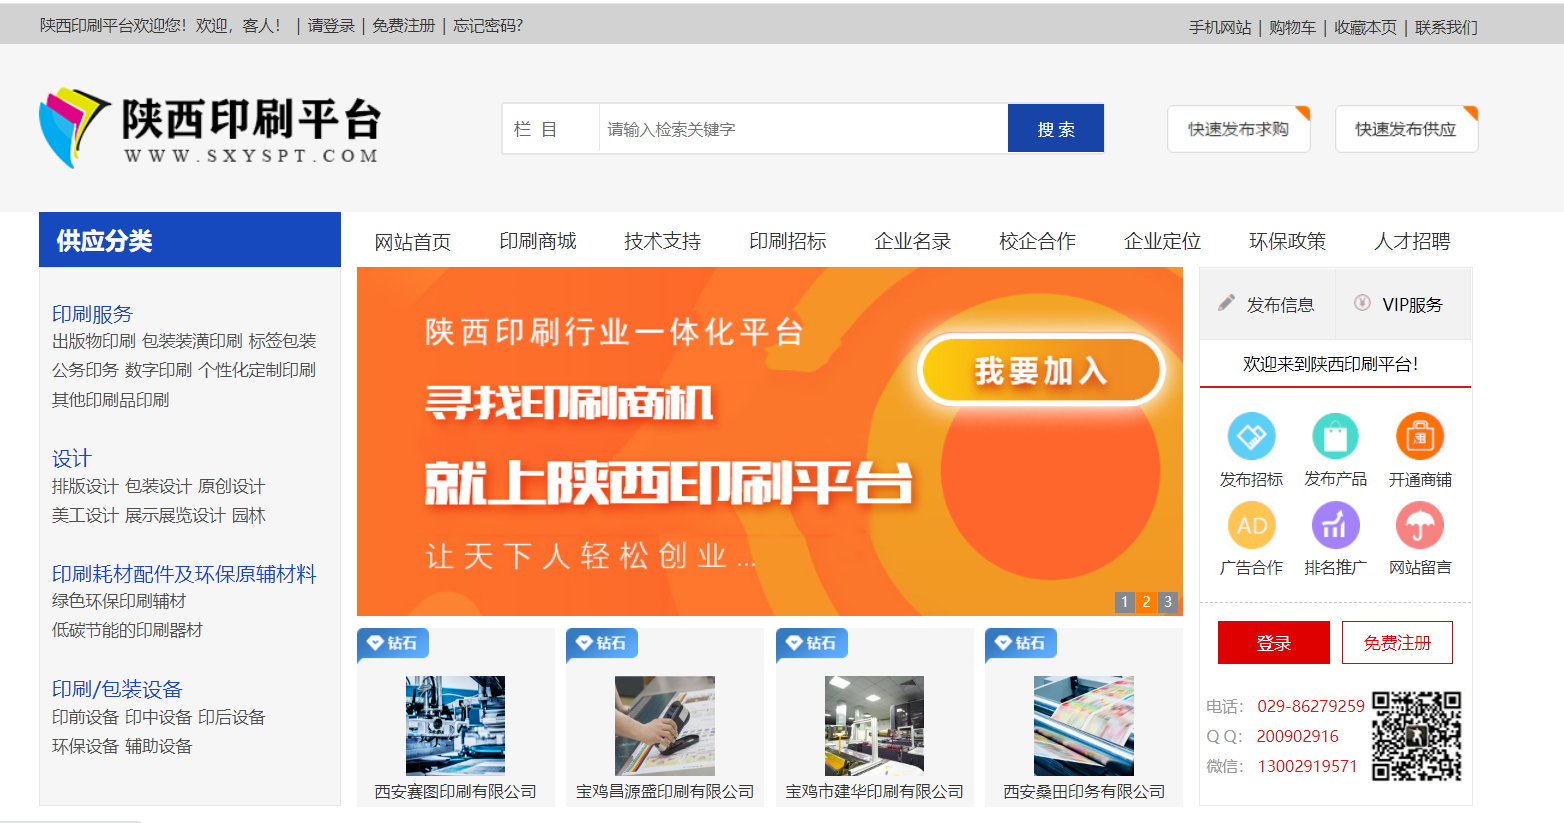 整合印刷领域综合性网站——-陕西印刷平台-区块链时报网